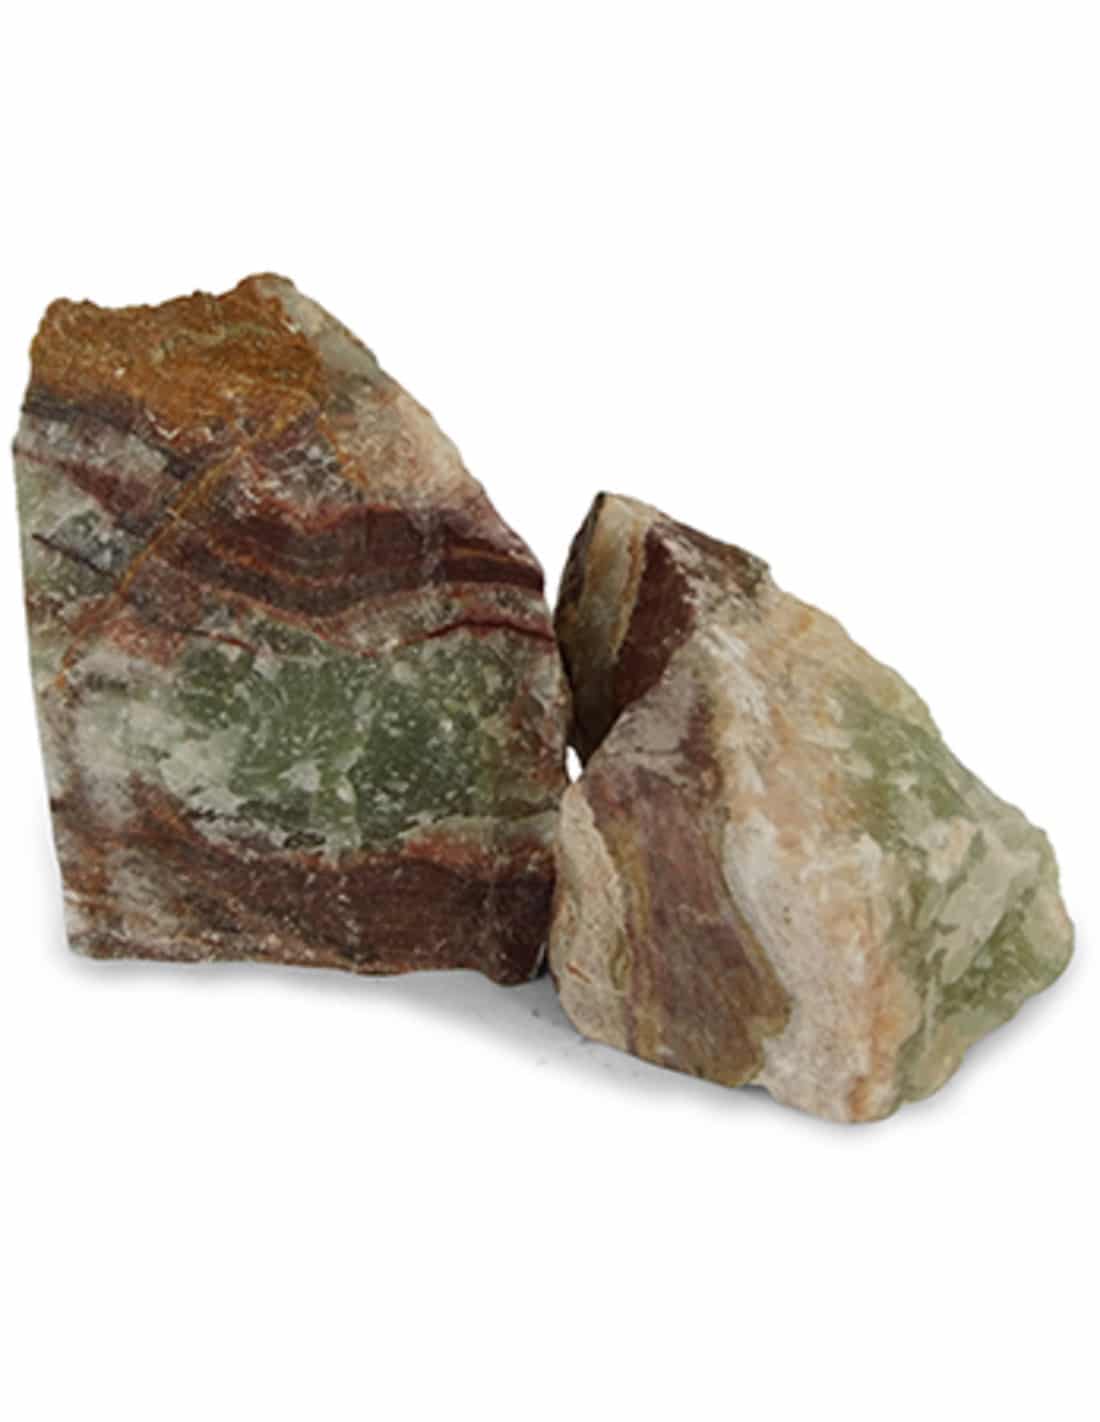 Raw Chunks Aragonite Pakistan (500 grams)